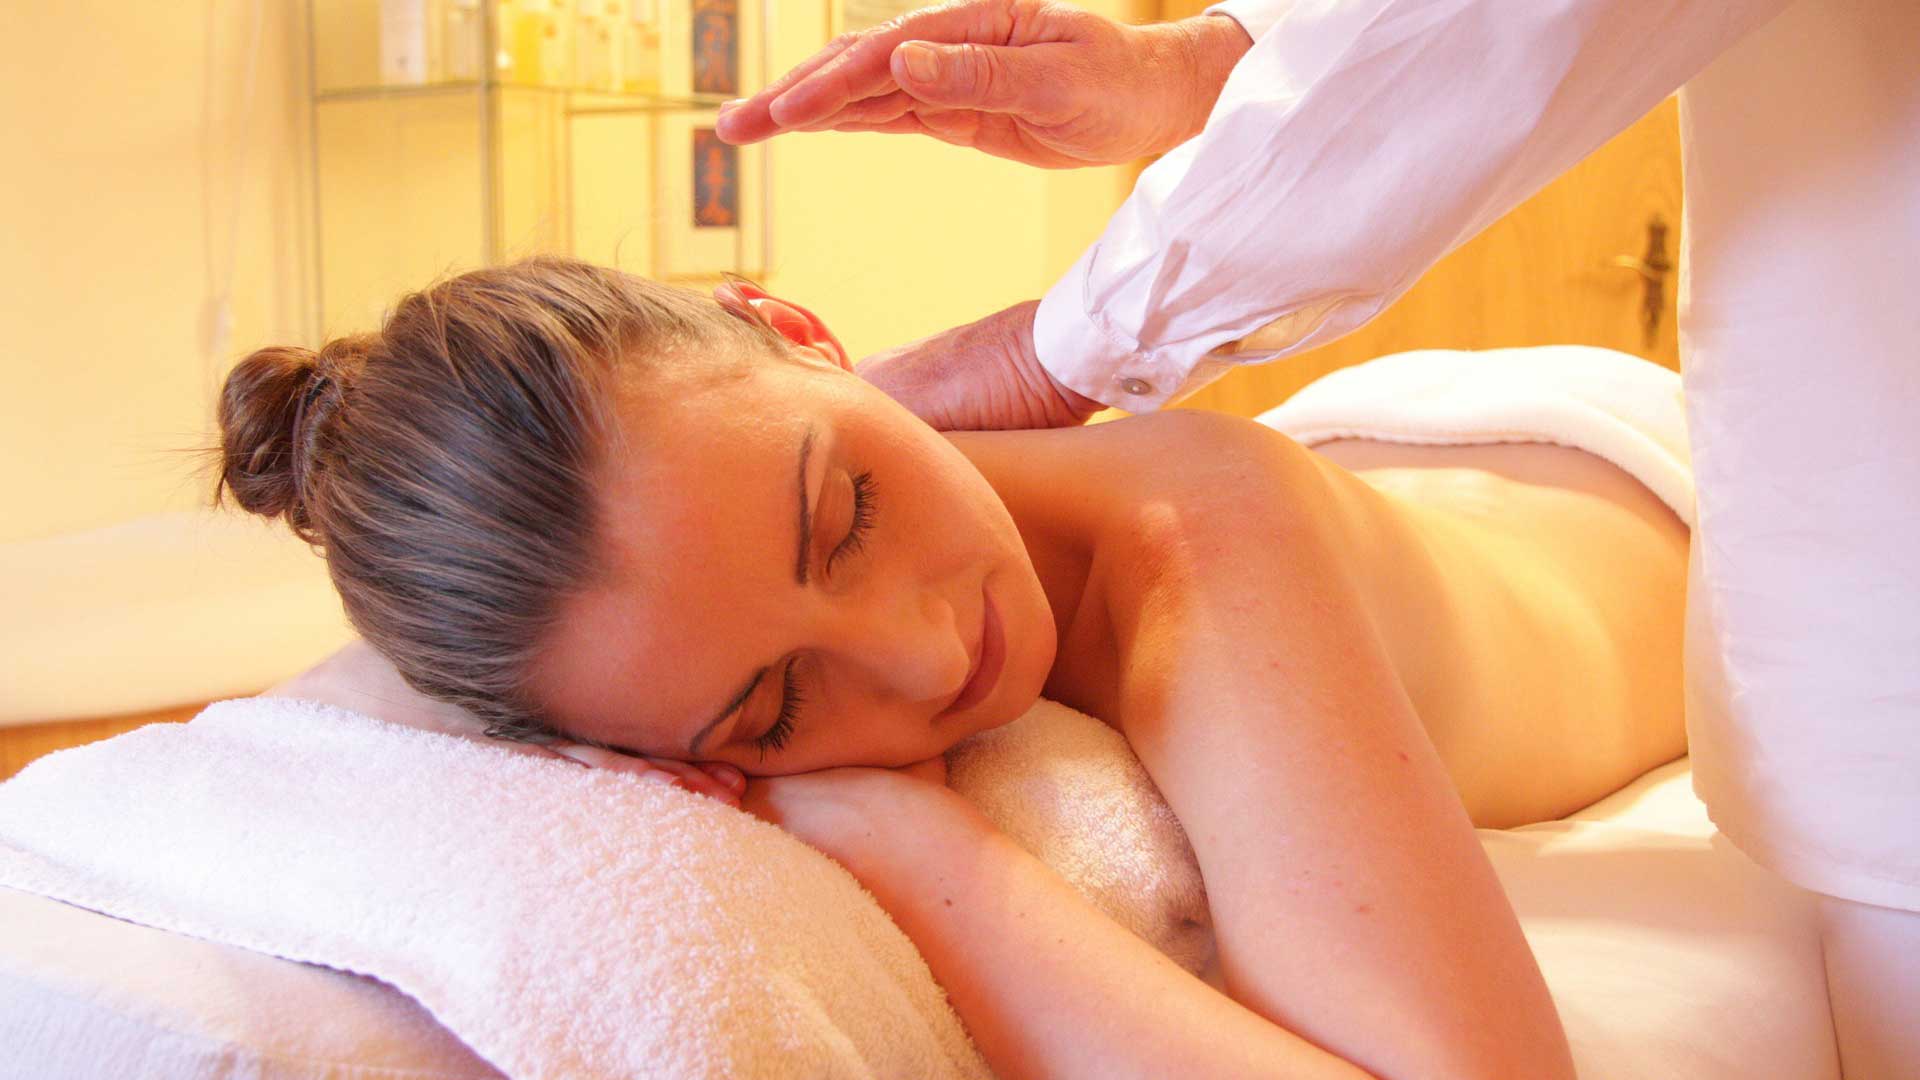  Massage relaxant Prenez rendez-vous chez  Massotherapie Fitko à St-Jérôme